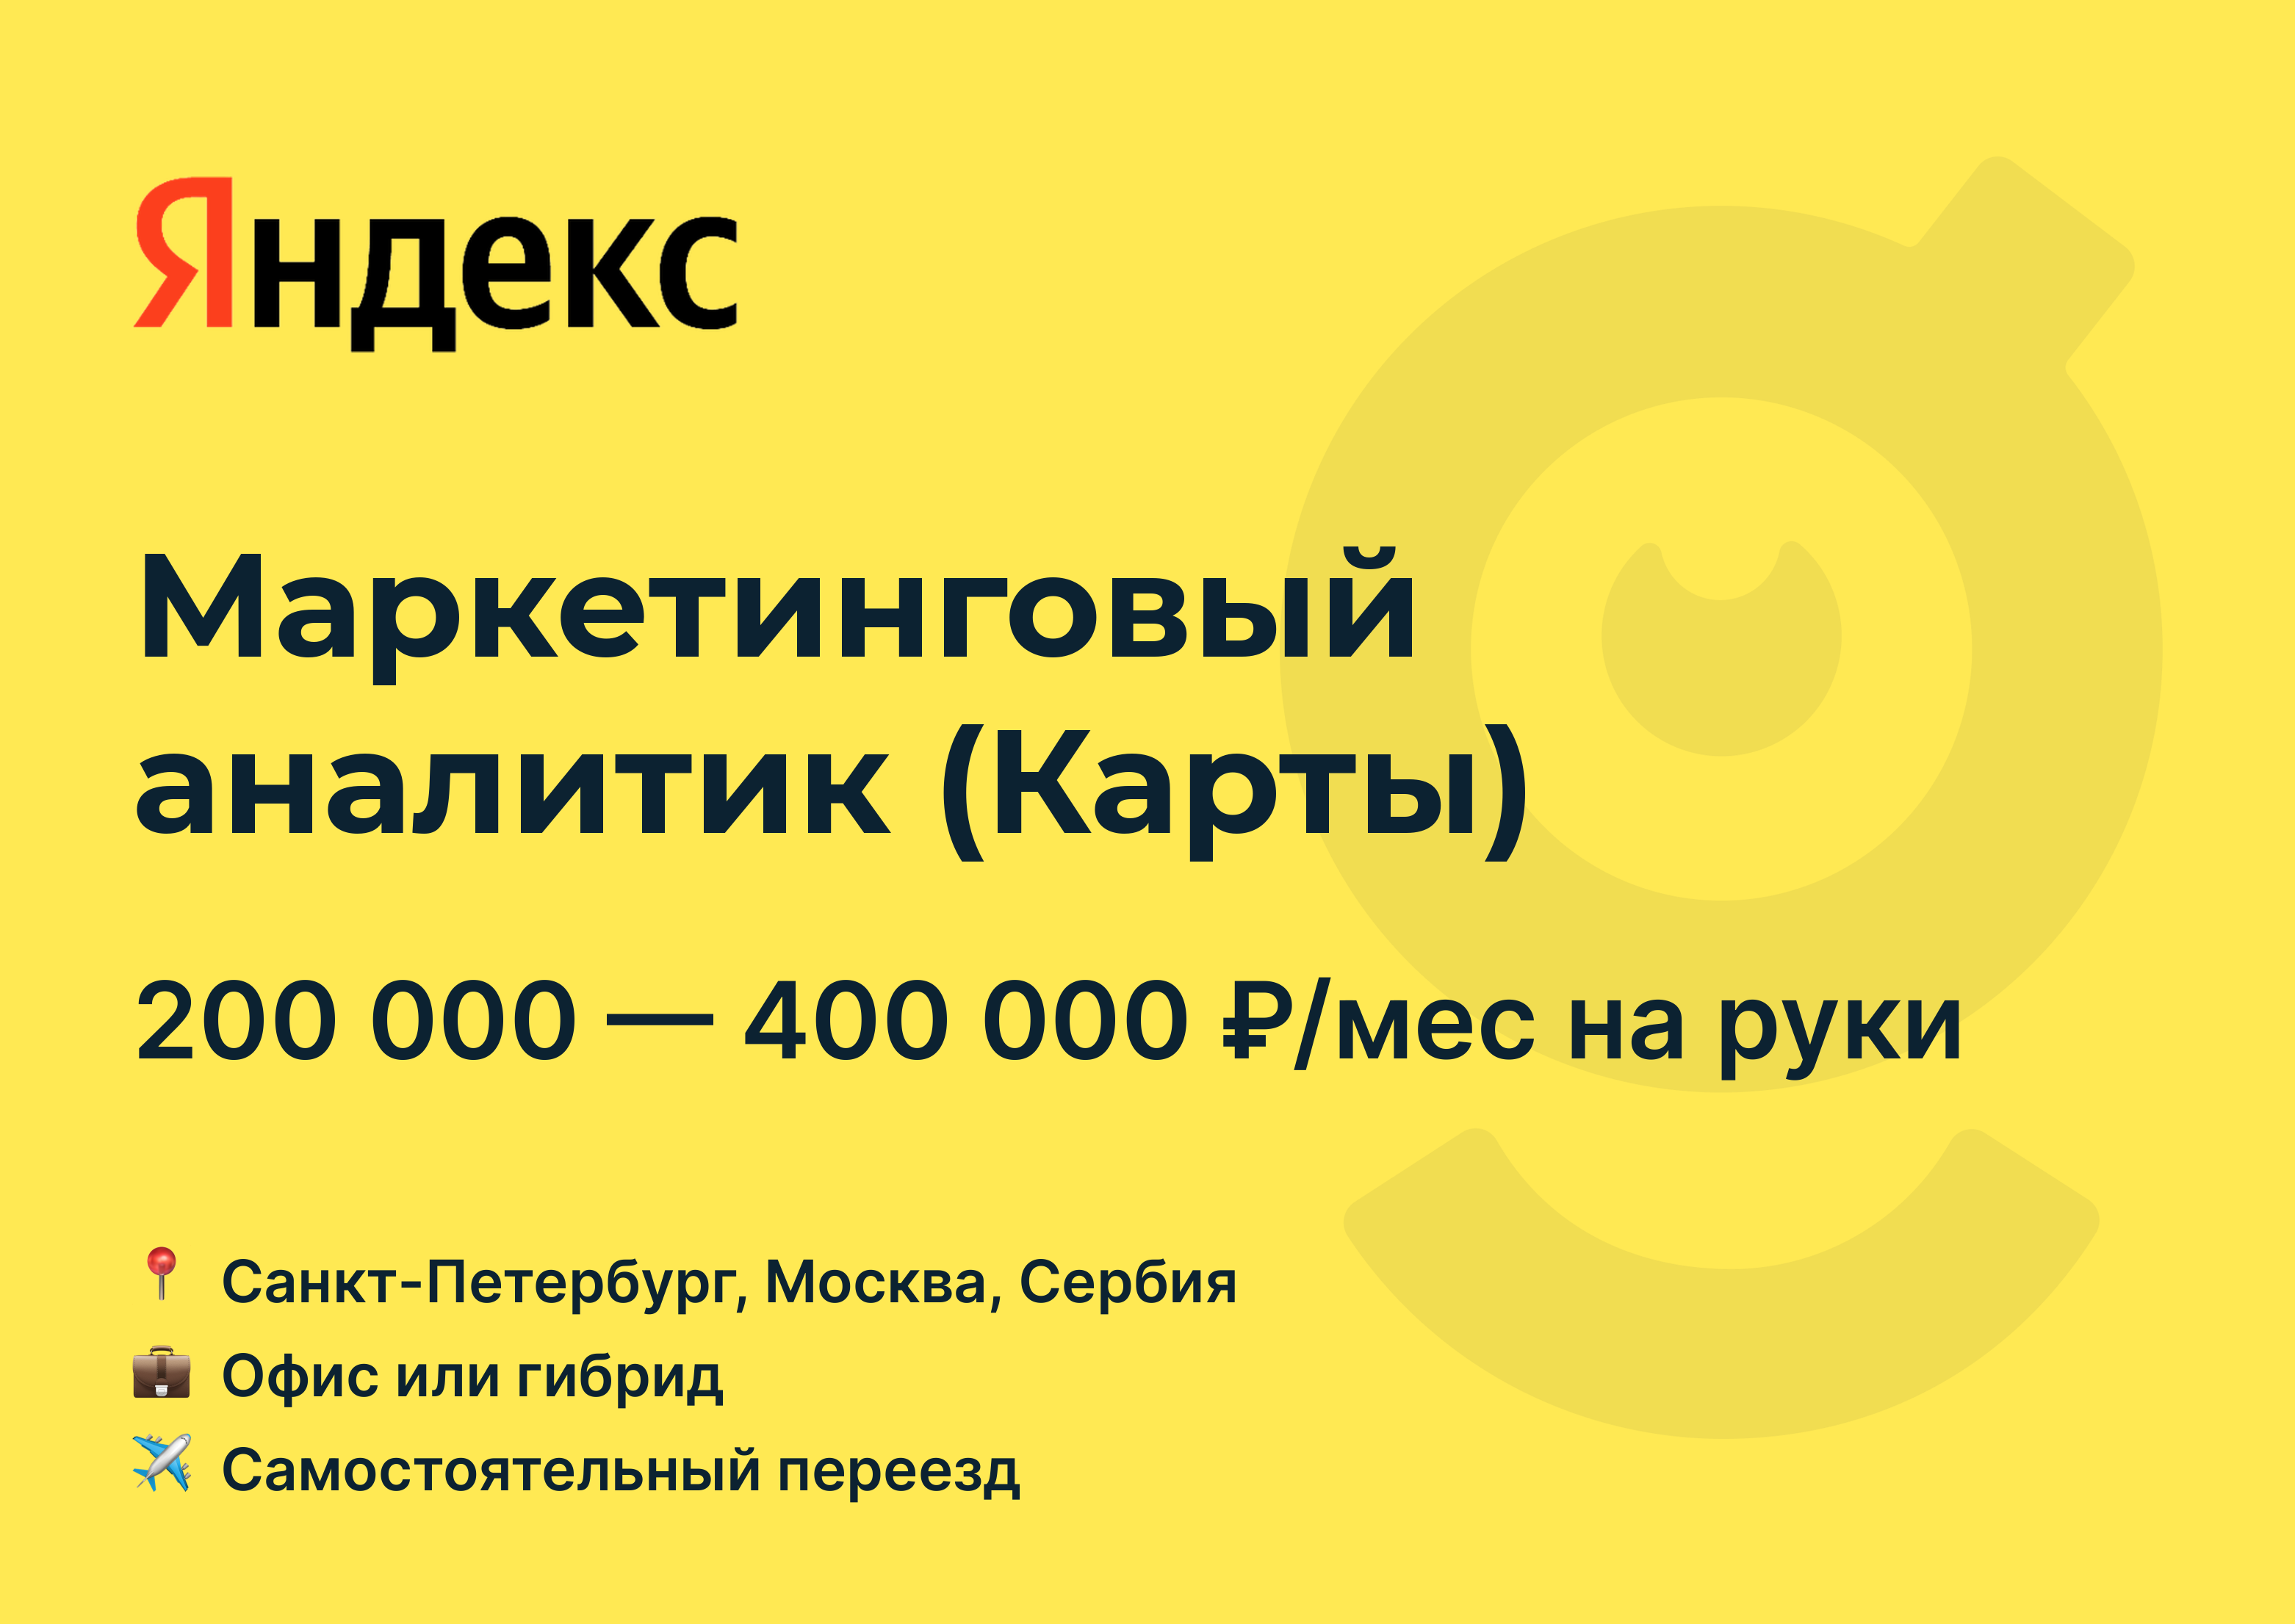 Сервисы Яндекса вертикали. Маркетинговые вакансии